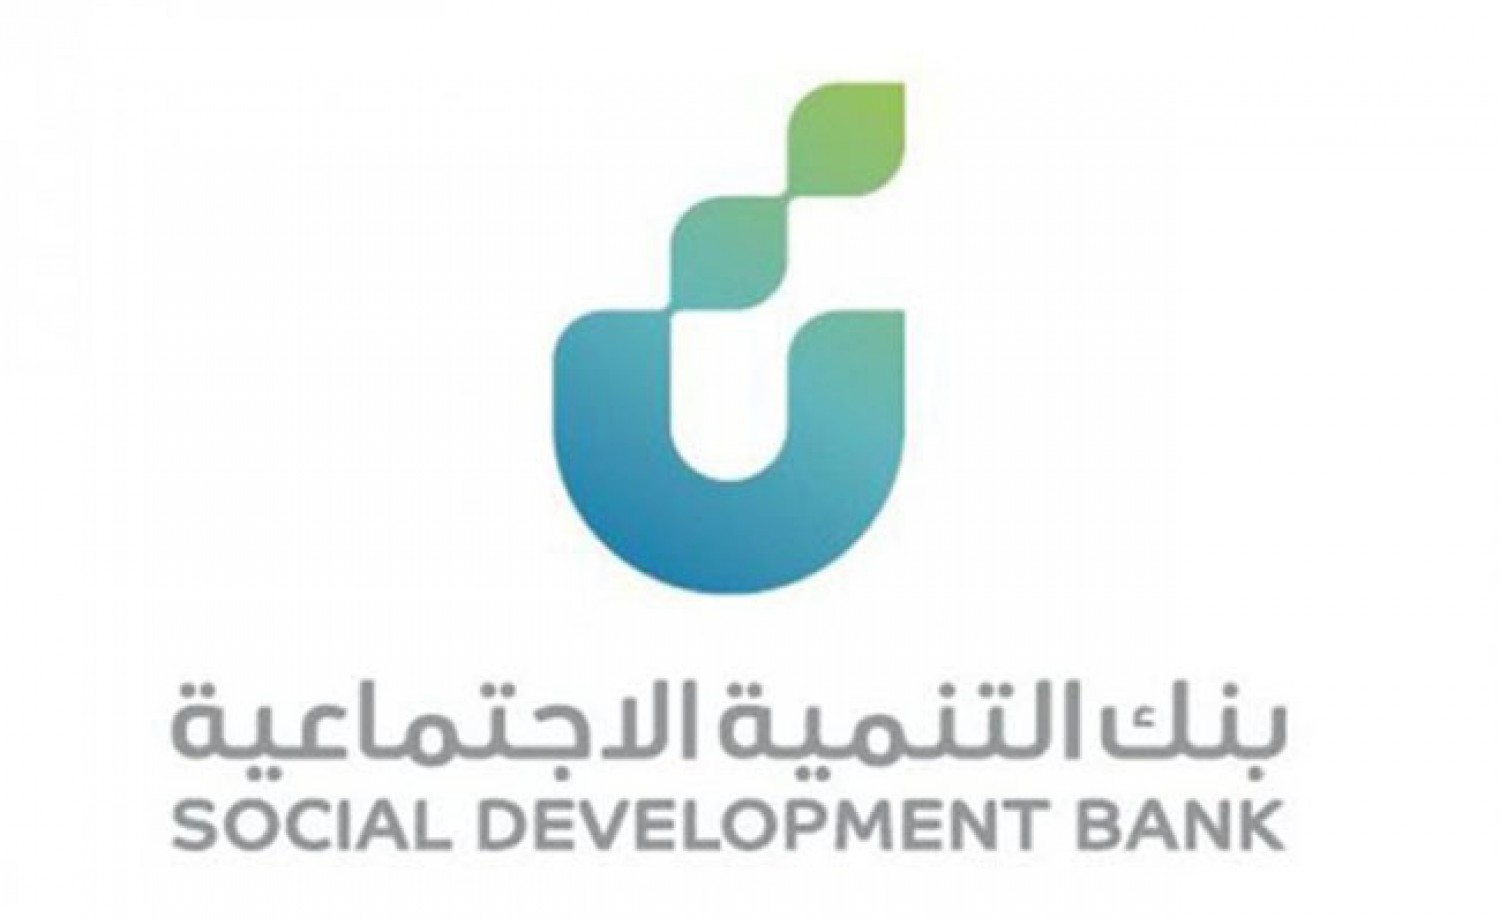 بنك التنمية الاجتماعية يوضح شروط تمنح موظفي الحكومة قرض الأسرة